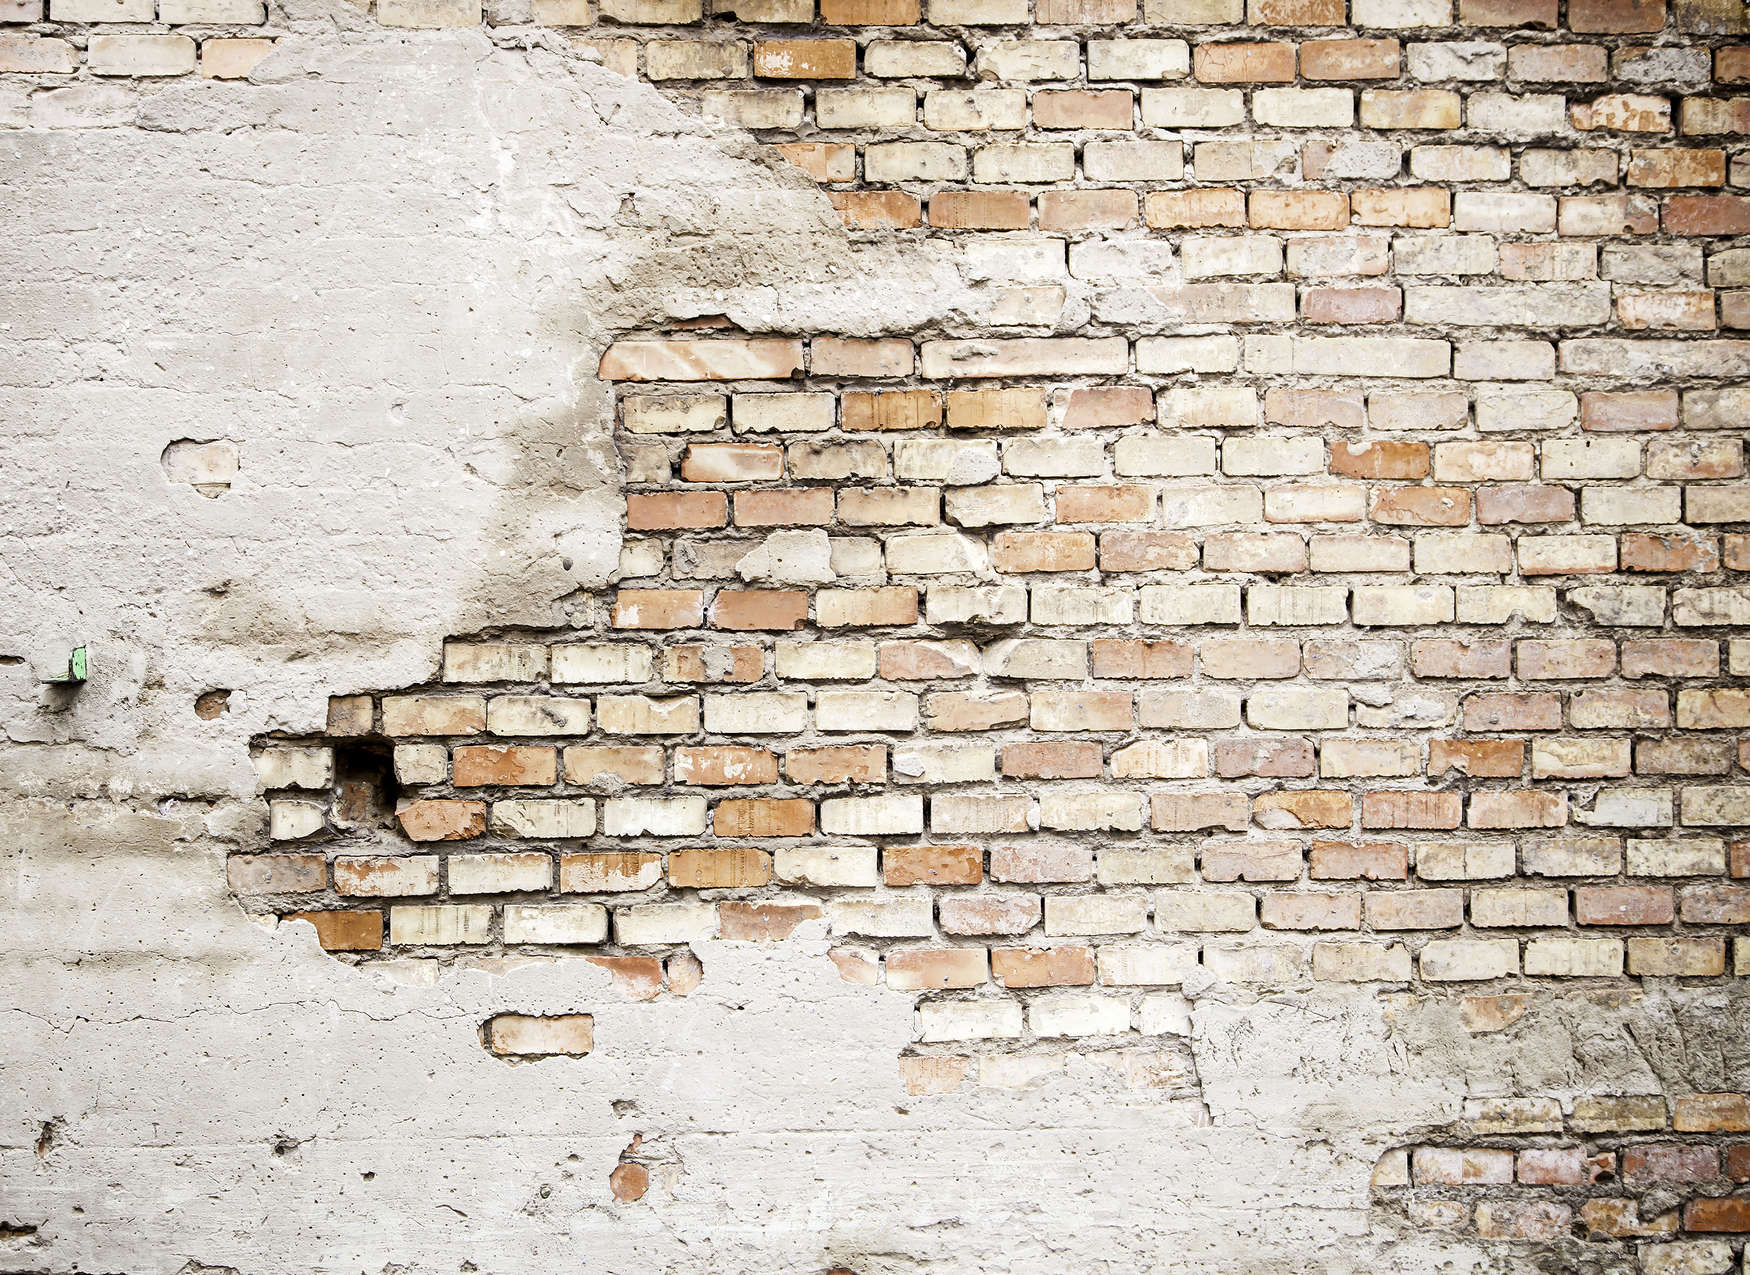             Fototapete Backsteinmauer im Industrialstyle mit Putzoptik – Braun, Grau, Beige
        